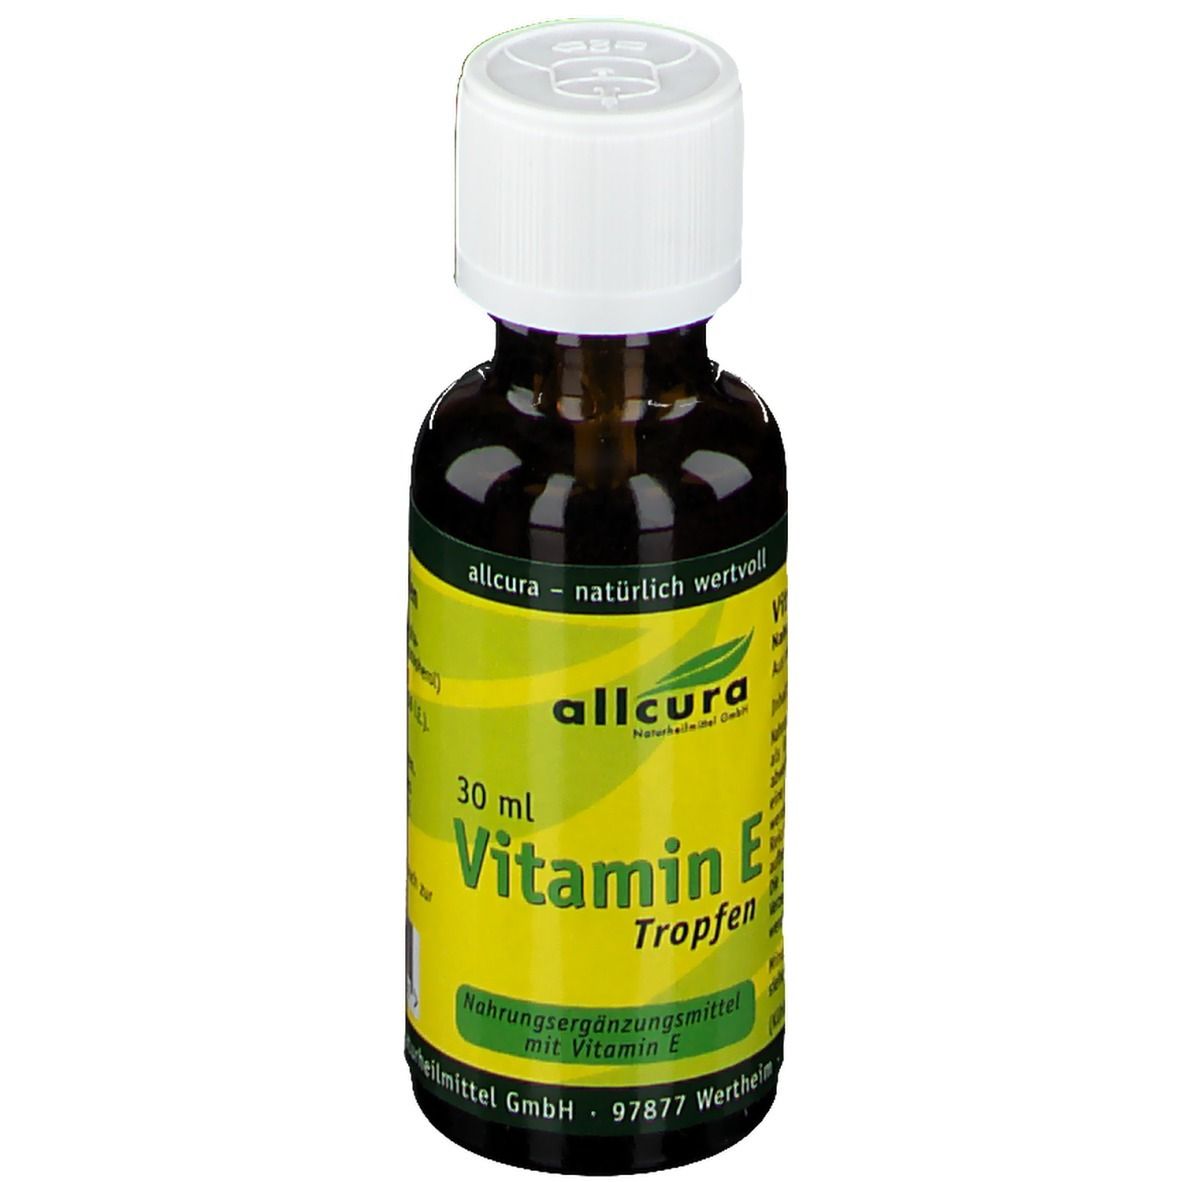 allcura Vitamin E Tropfen